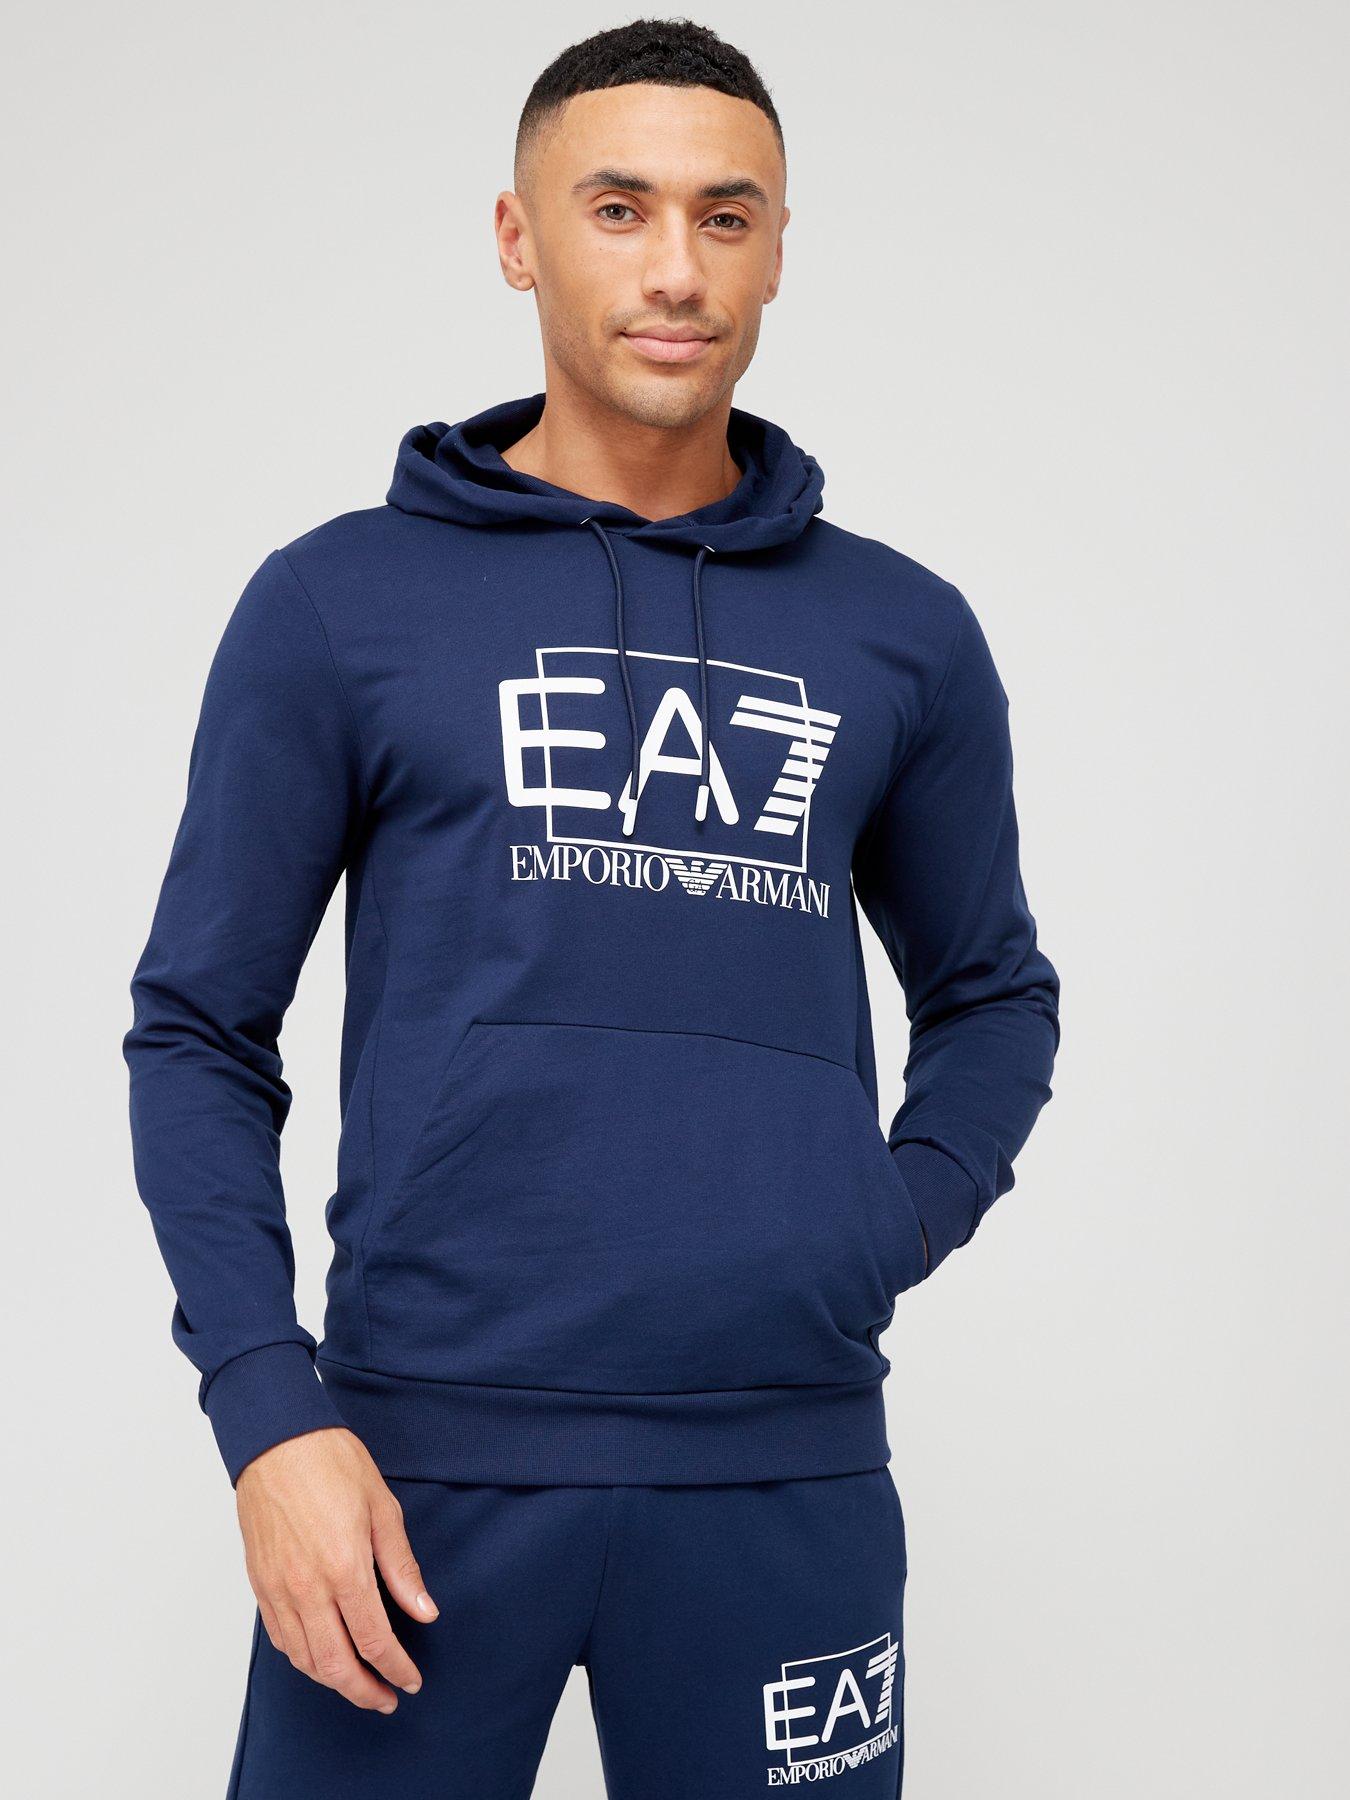 Ea7 emporio armani | Hoodies & sweatshirts | Men 